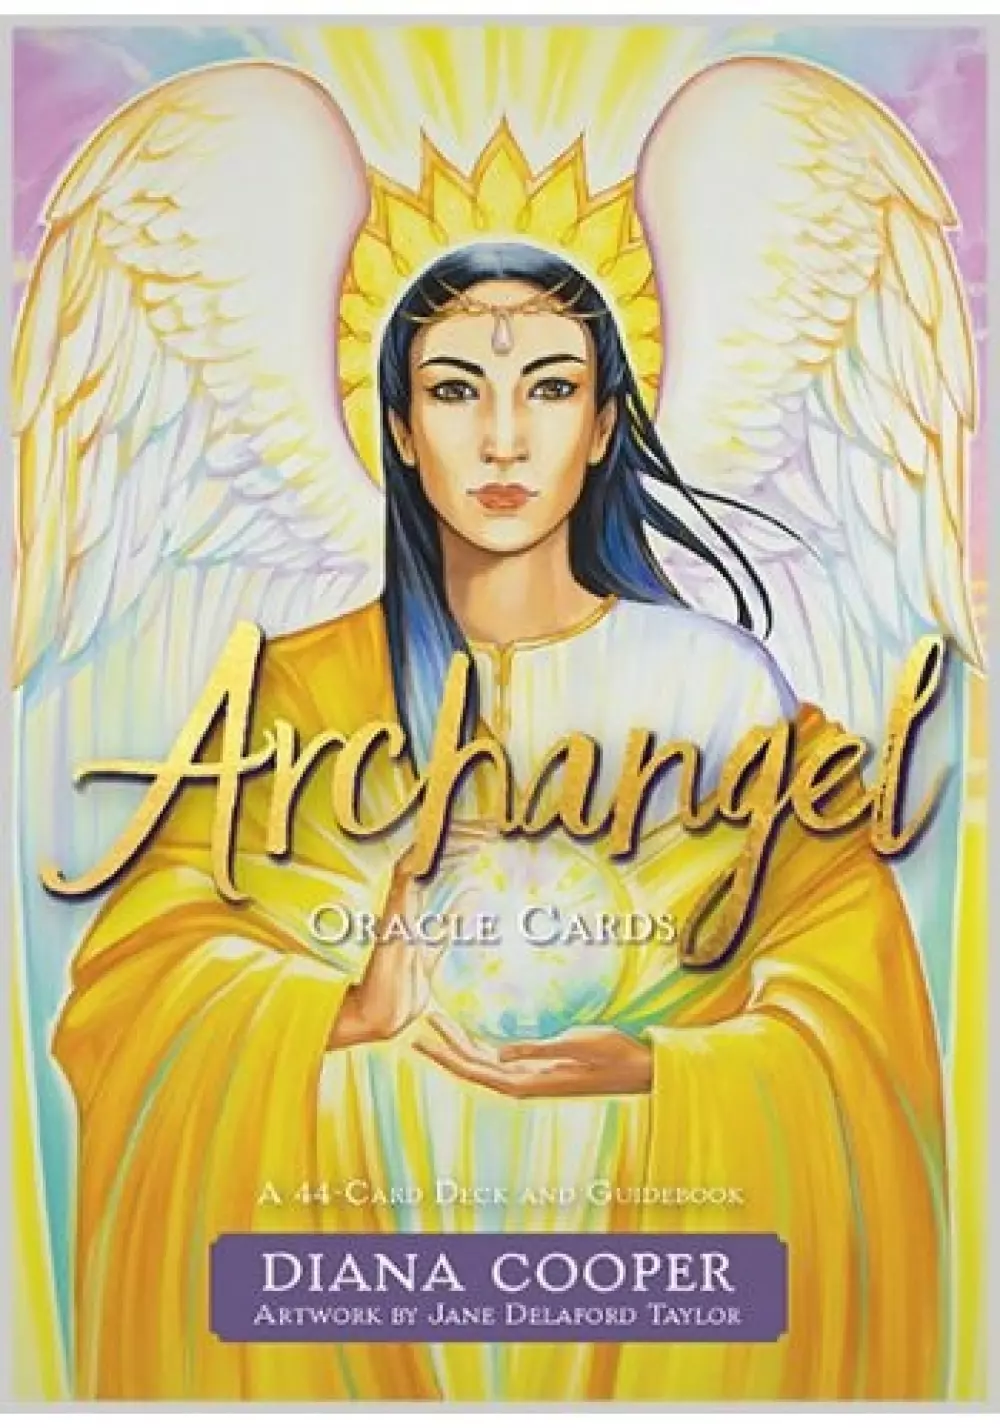 Archangel Oracle Cards, Tarot & orakel, Orakelkort, A 44-Card Deck and Guidebook